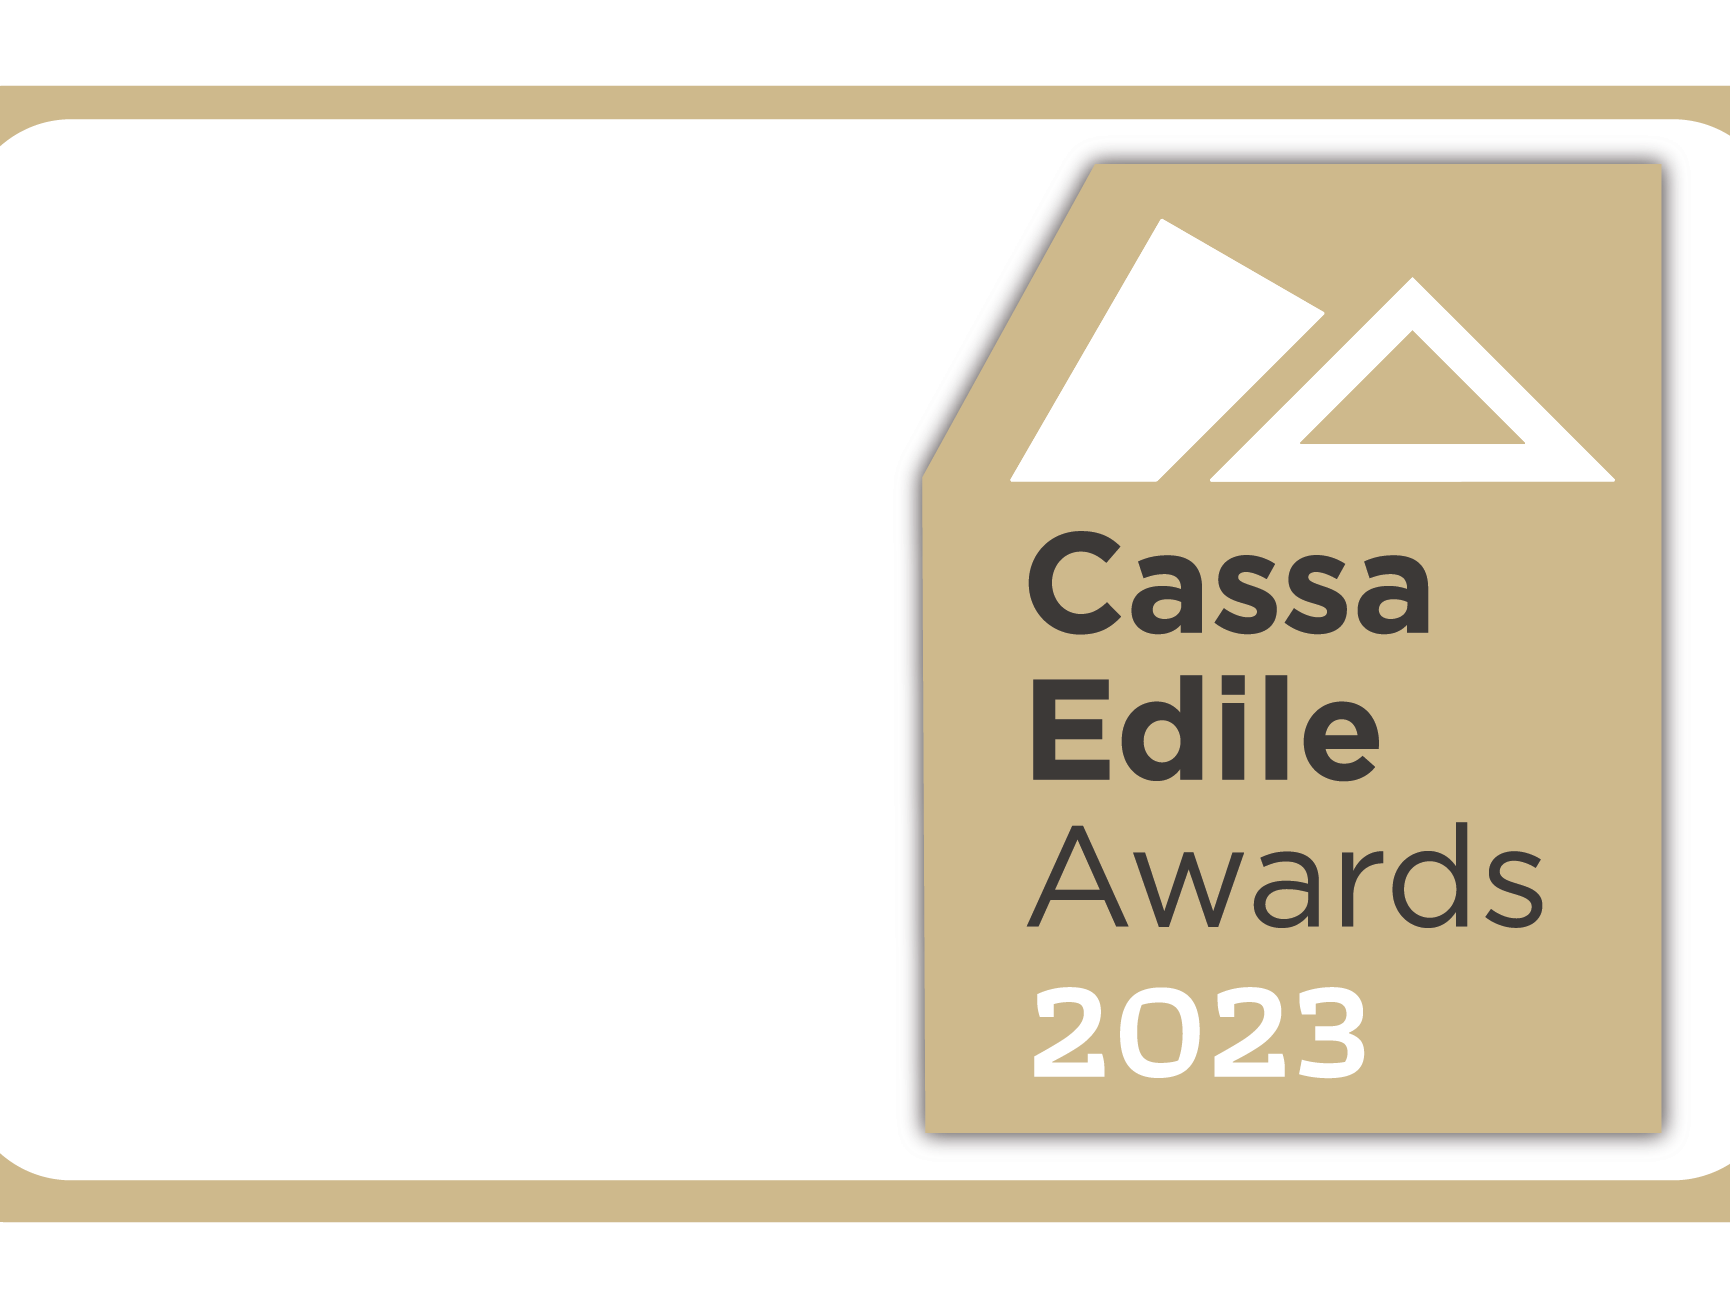 Cassa edile Awards, Bucci spa ottiene il riconoscimento